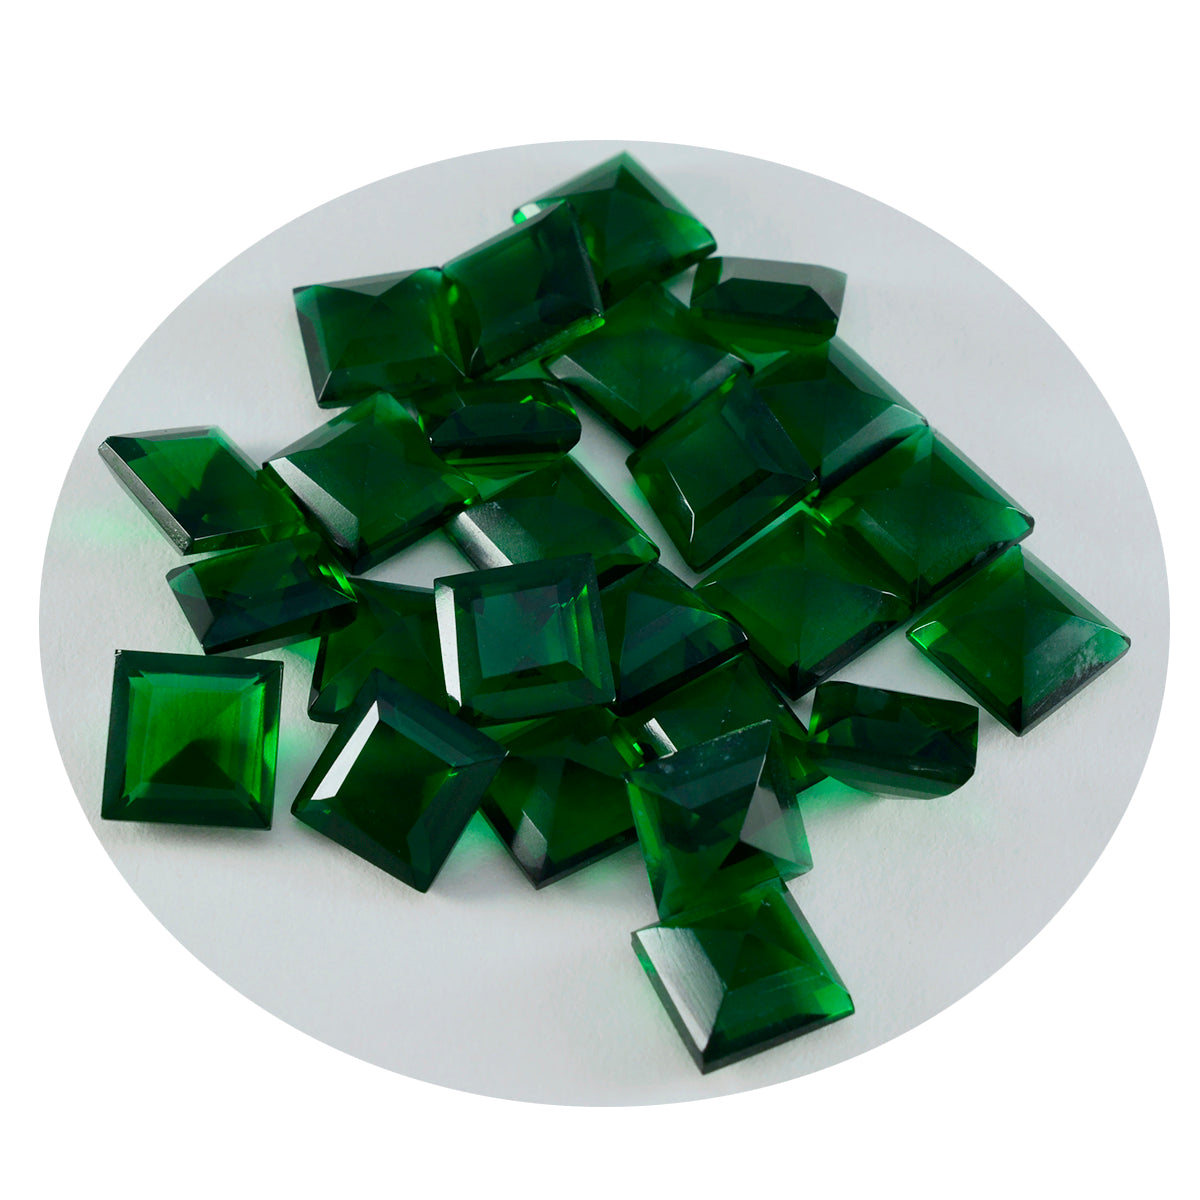 riyogems 1 шт. зеленый изумруд cz ограненный 9x9 мм квадратной формы камень удивительного качества